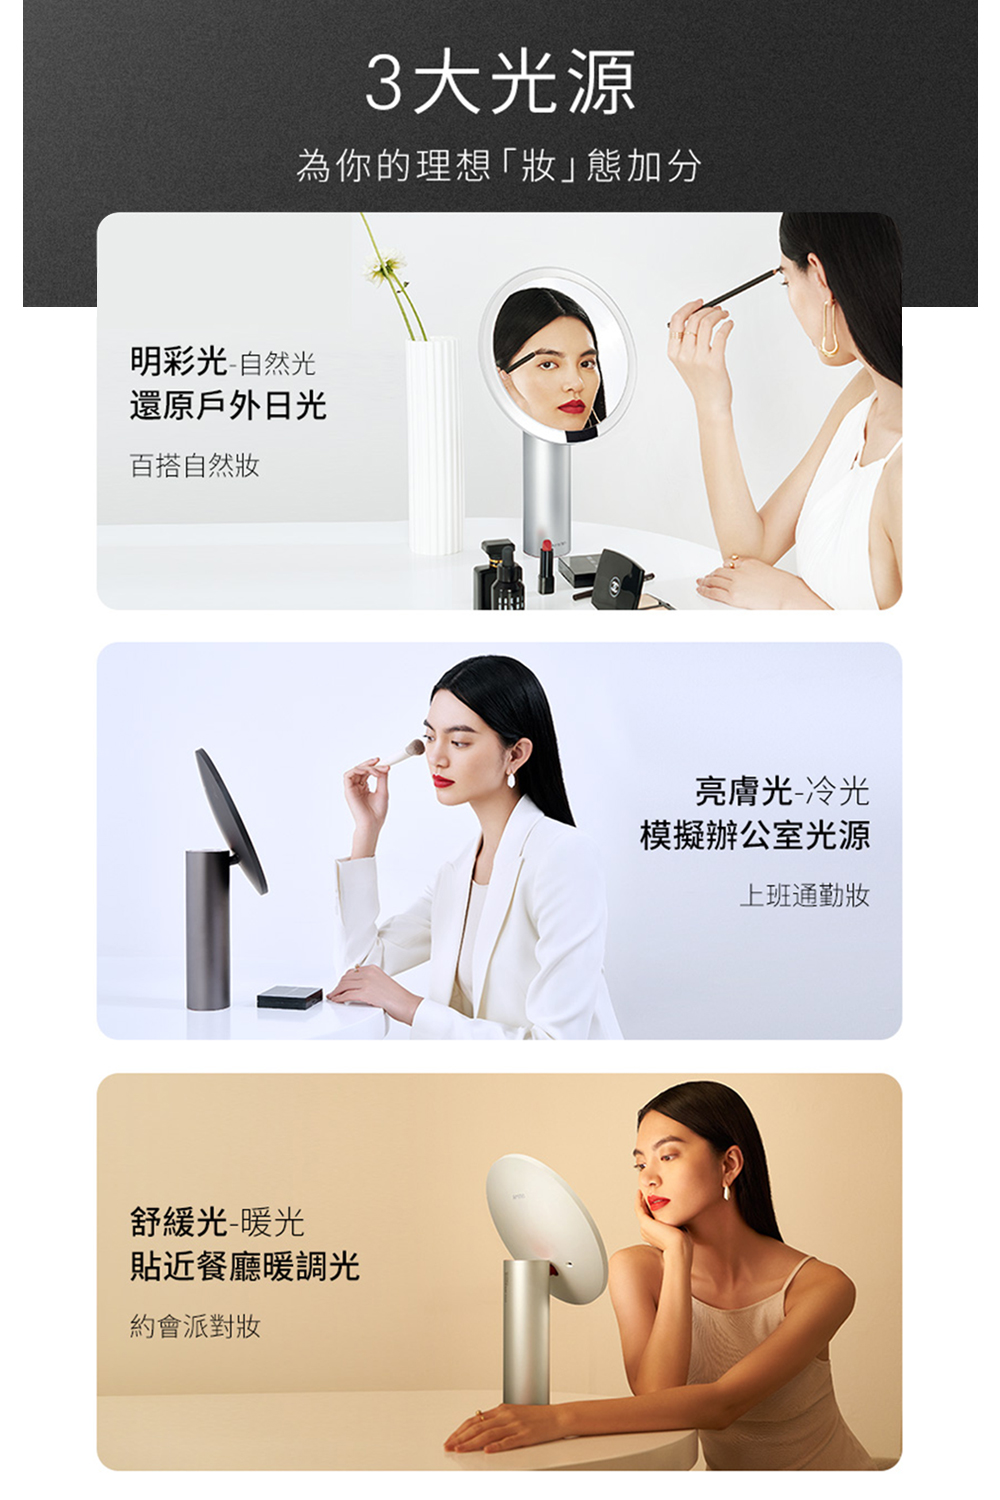 全新第三代AMIRO Oath 自動感光 LED化妝鏡(國際精裝彩盒版)-雲貝白